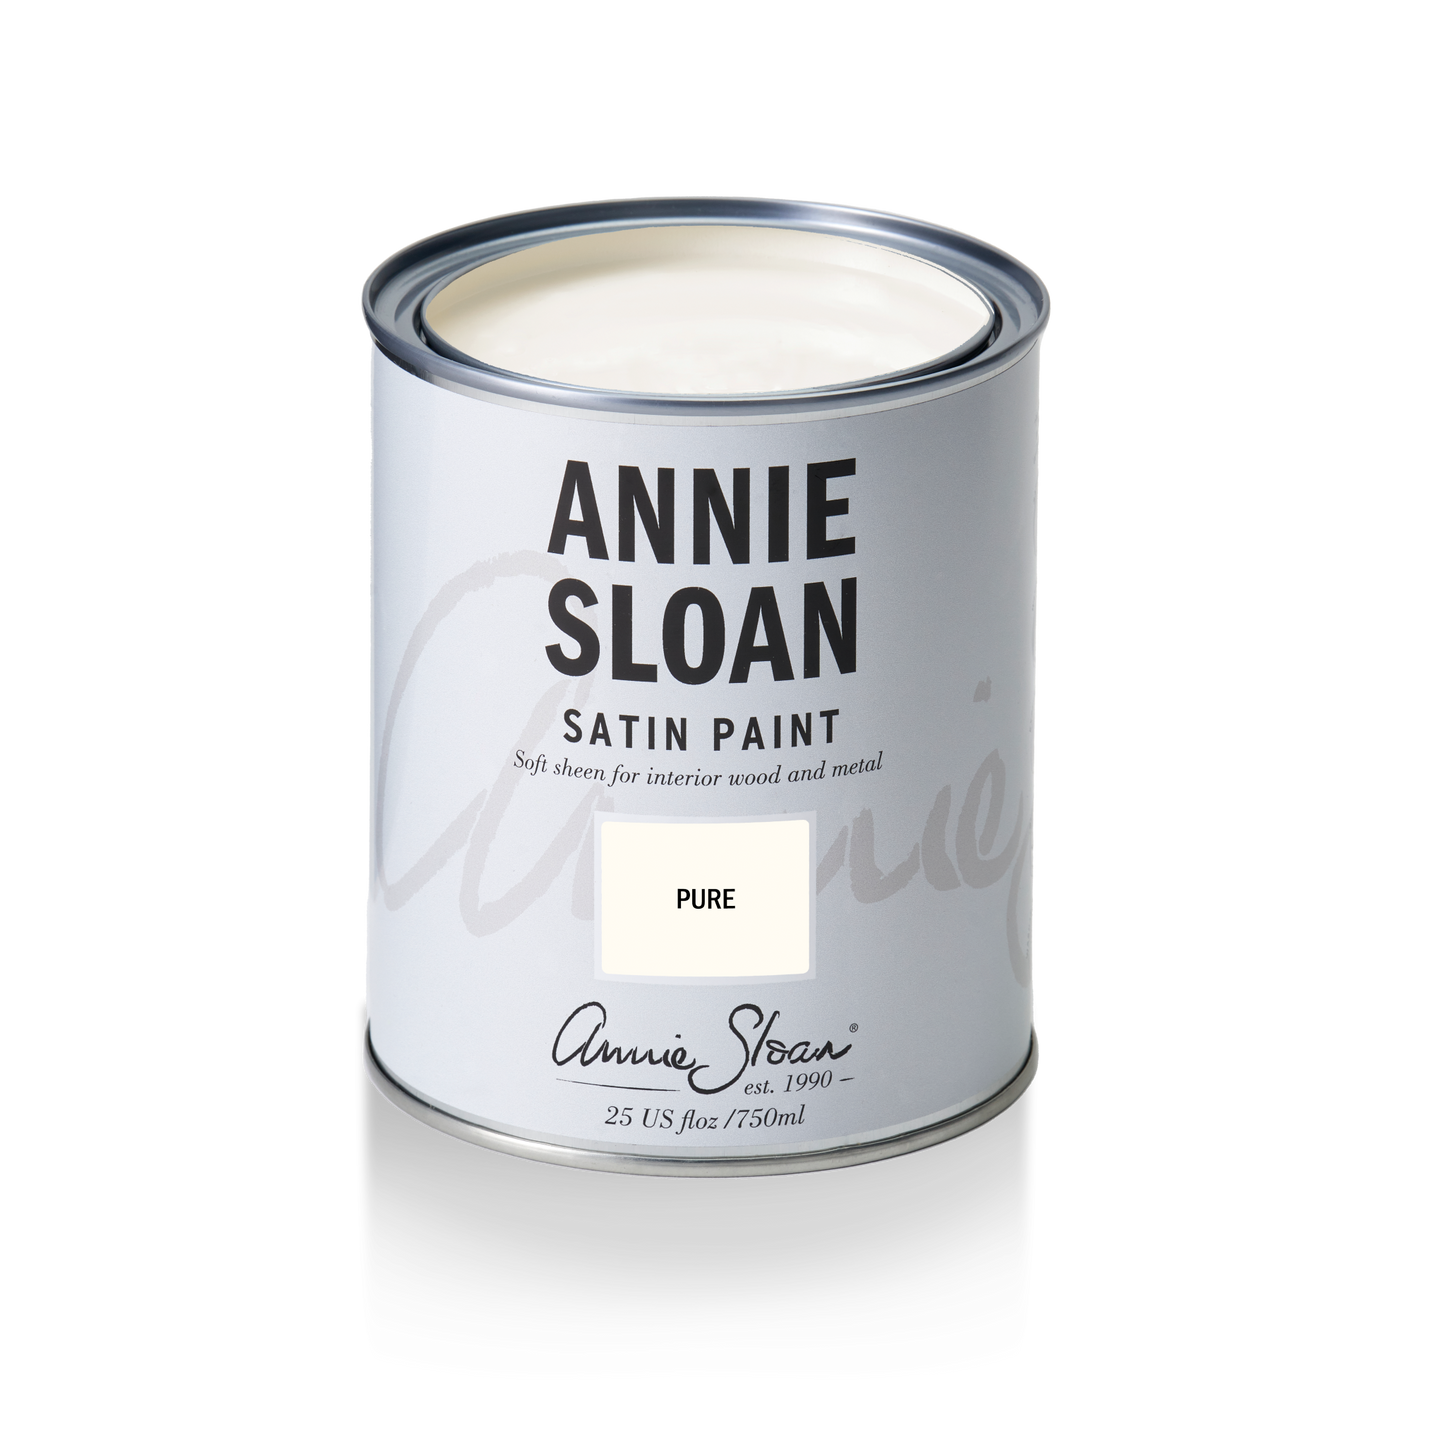 Annie Sloan Satin Paint Pure, 750 ml Tin